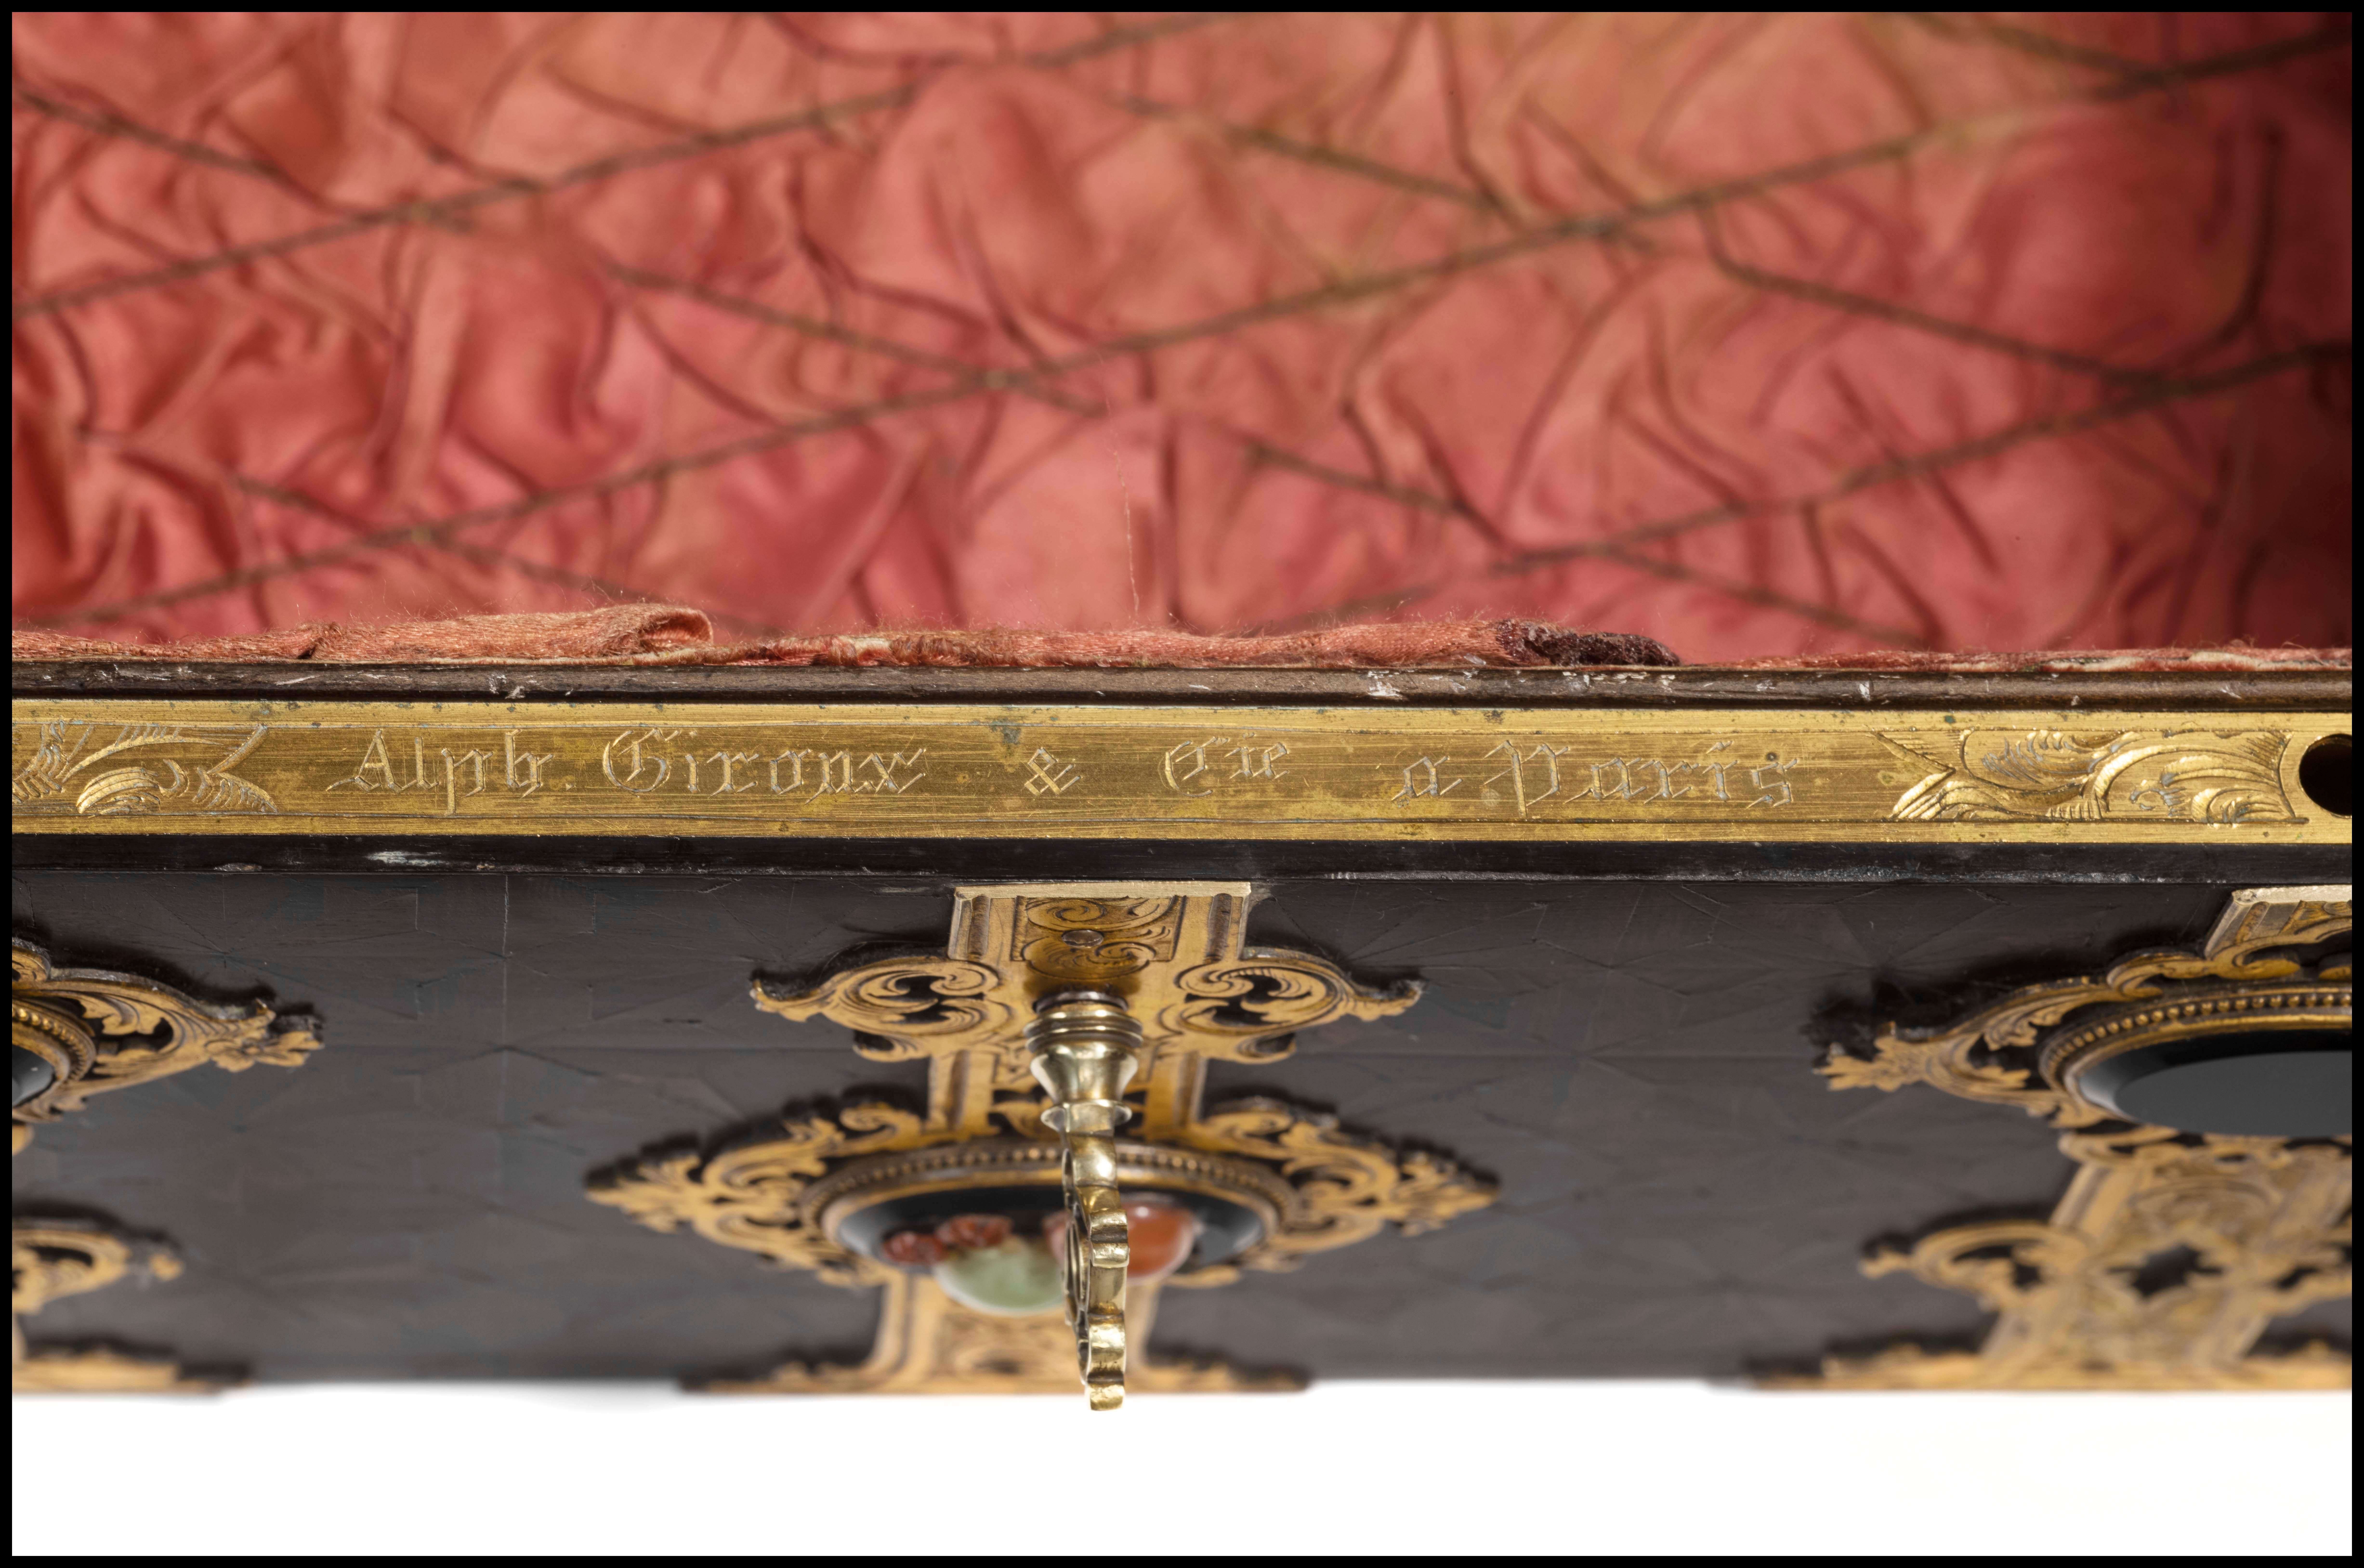 Ebonized Inlaid Box by Alphonse Giroux & Cie For Sale